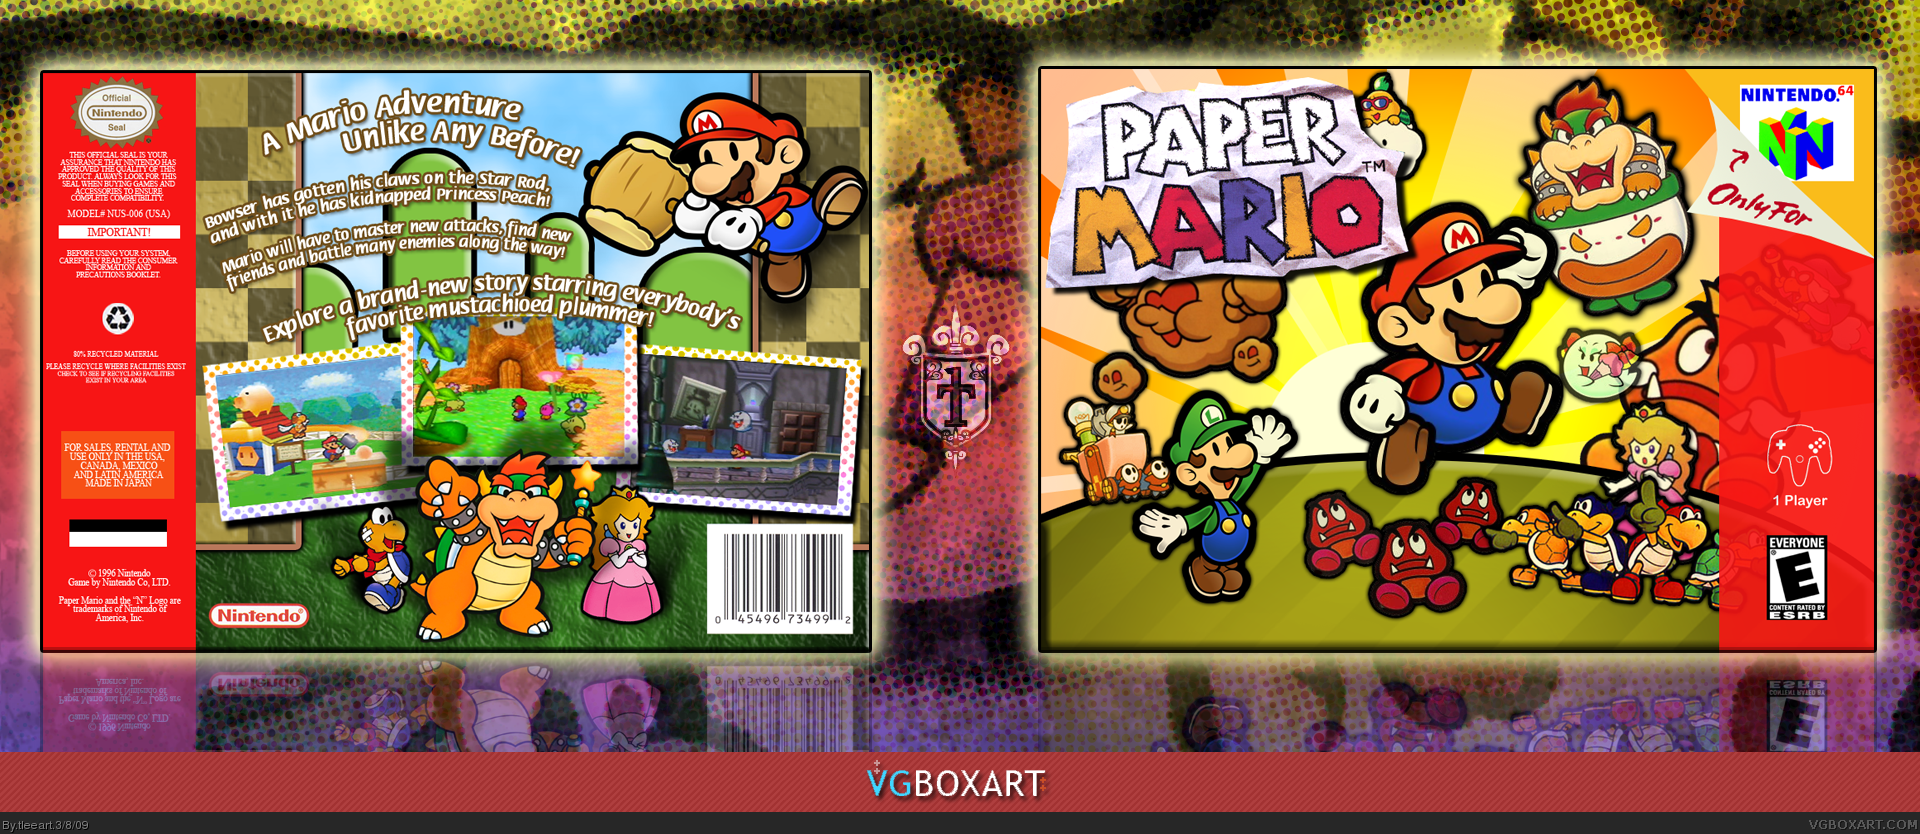 Nintendo 64 перевод. Paper Mario n64. Paper Mario обложка. Paper Mario GAMECUBE обложка. Пейпер Марио на Нинтендо 64.